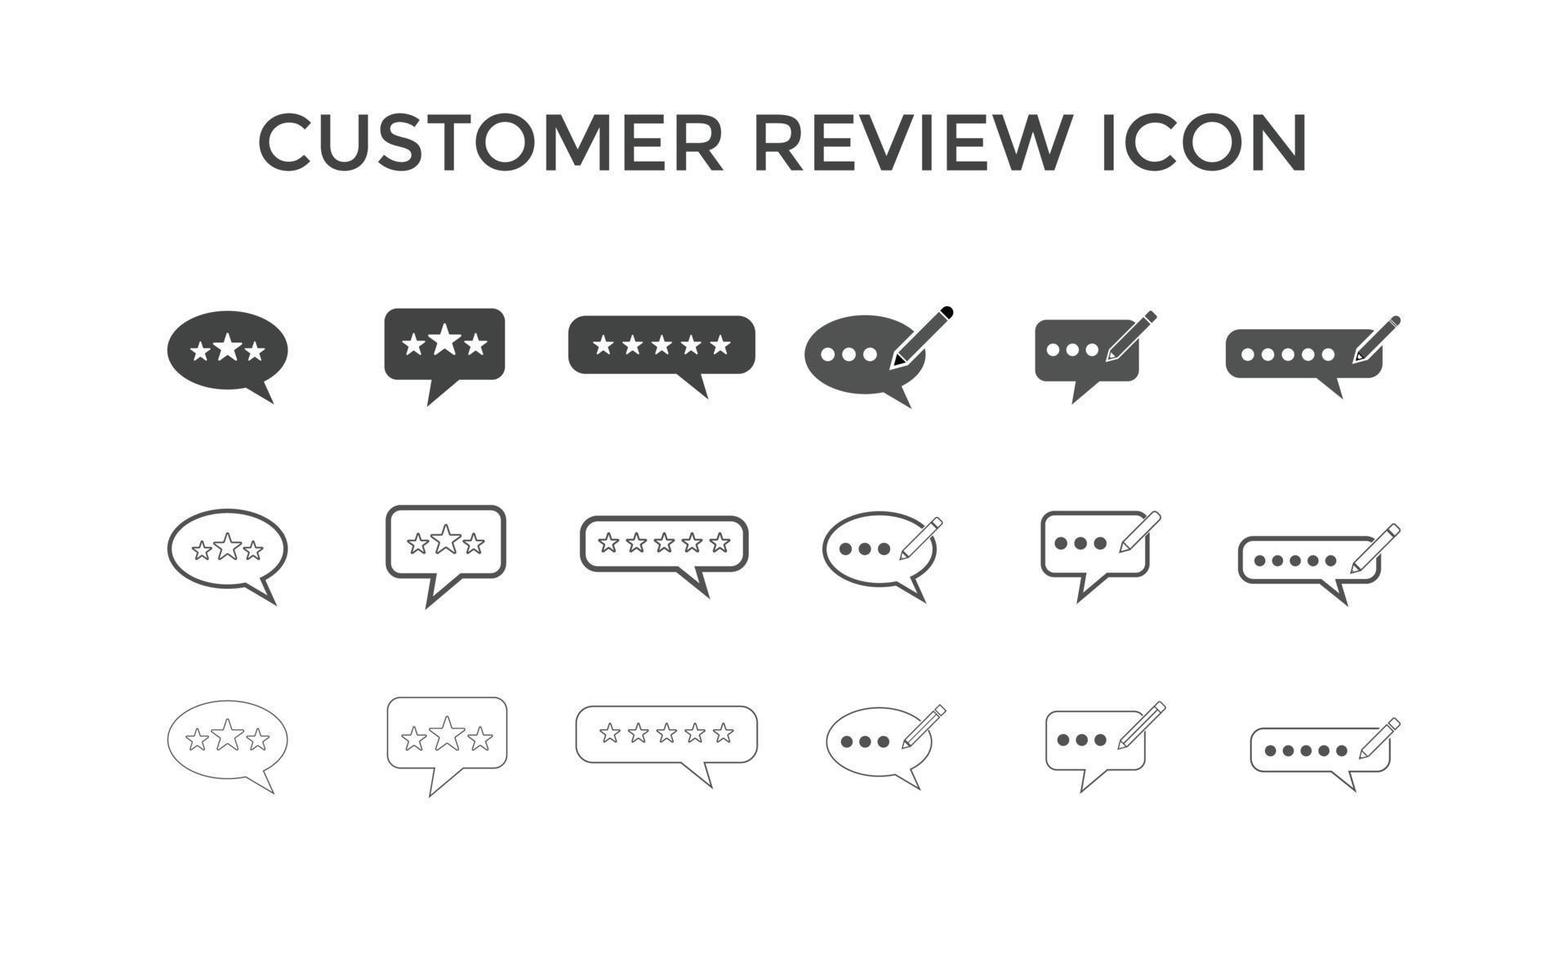 conjunto de comentarios o iconos de revisión del cliente ilustración vectorial. símbolo de signo de revisión de 5 estrellas del cliente para seo, web y aplicaciones móviles vector